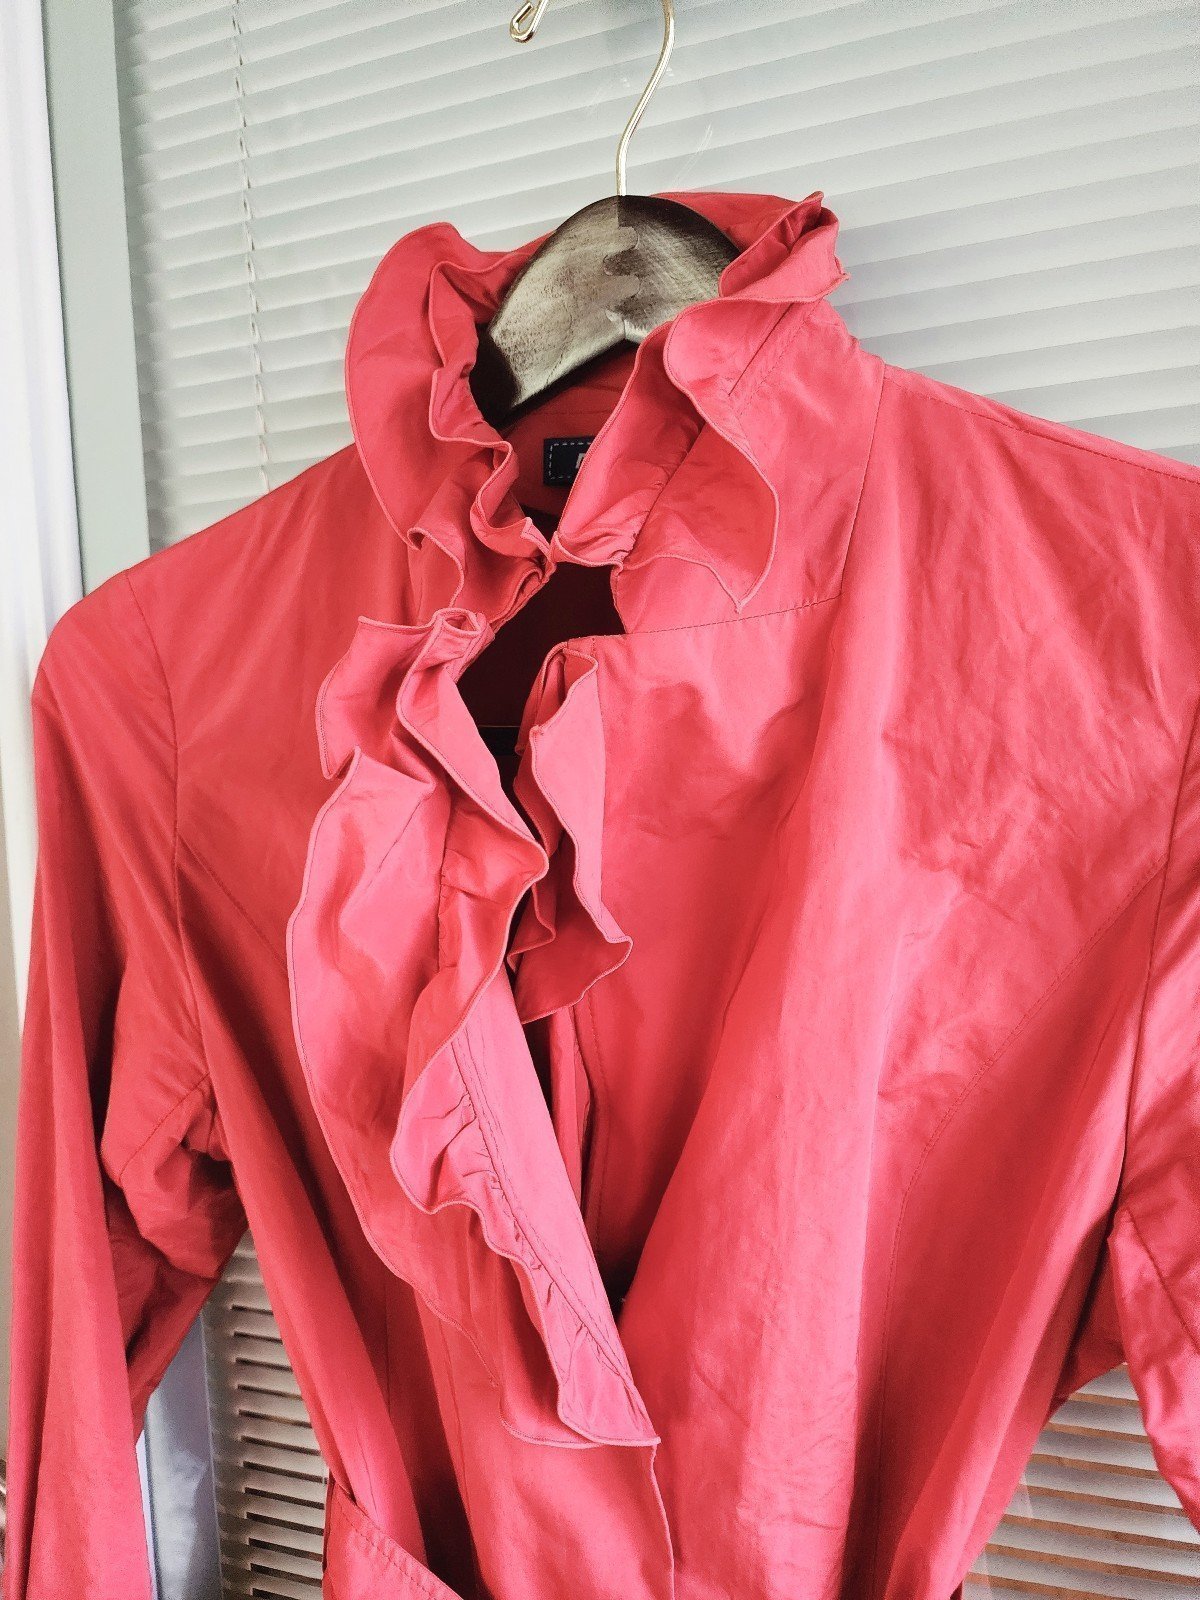 Cheap Japanese Spring Coat Jacket Vermilion Color oRx63QZlO outlet online shop